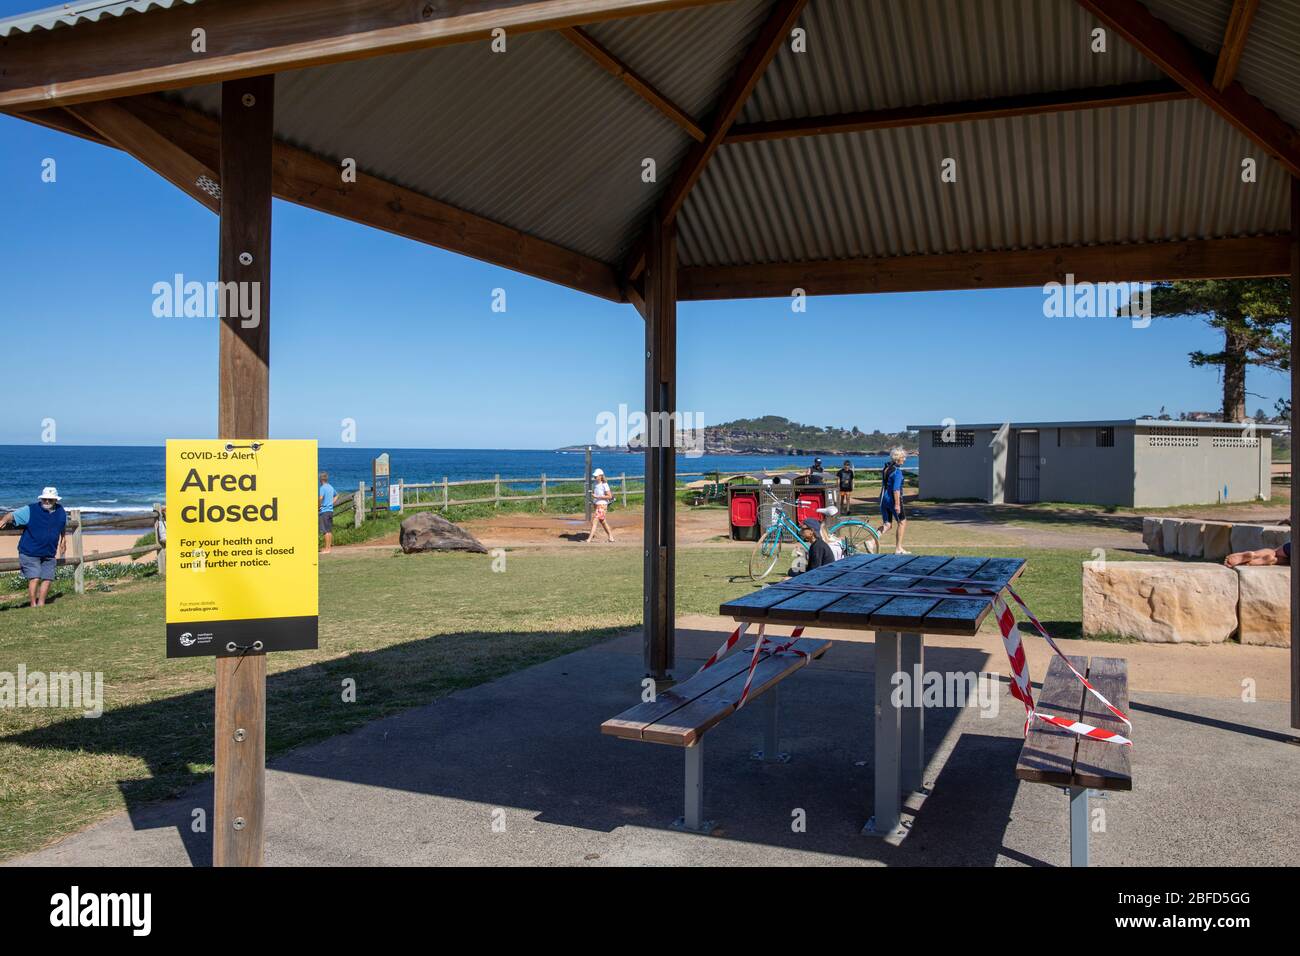 COVID 19 pandémie conduit à la fermeture des aires publiques et des aires de pique-nique barbecue sur les plages de Sydney, ici Mona vale Beach, Sydney, Australie Banque D'Images